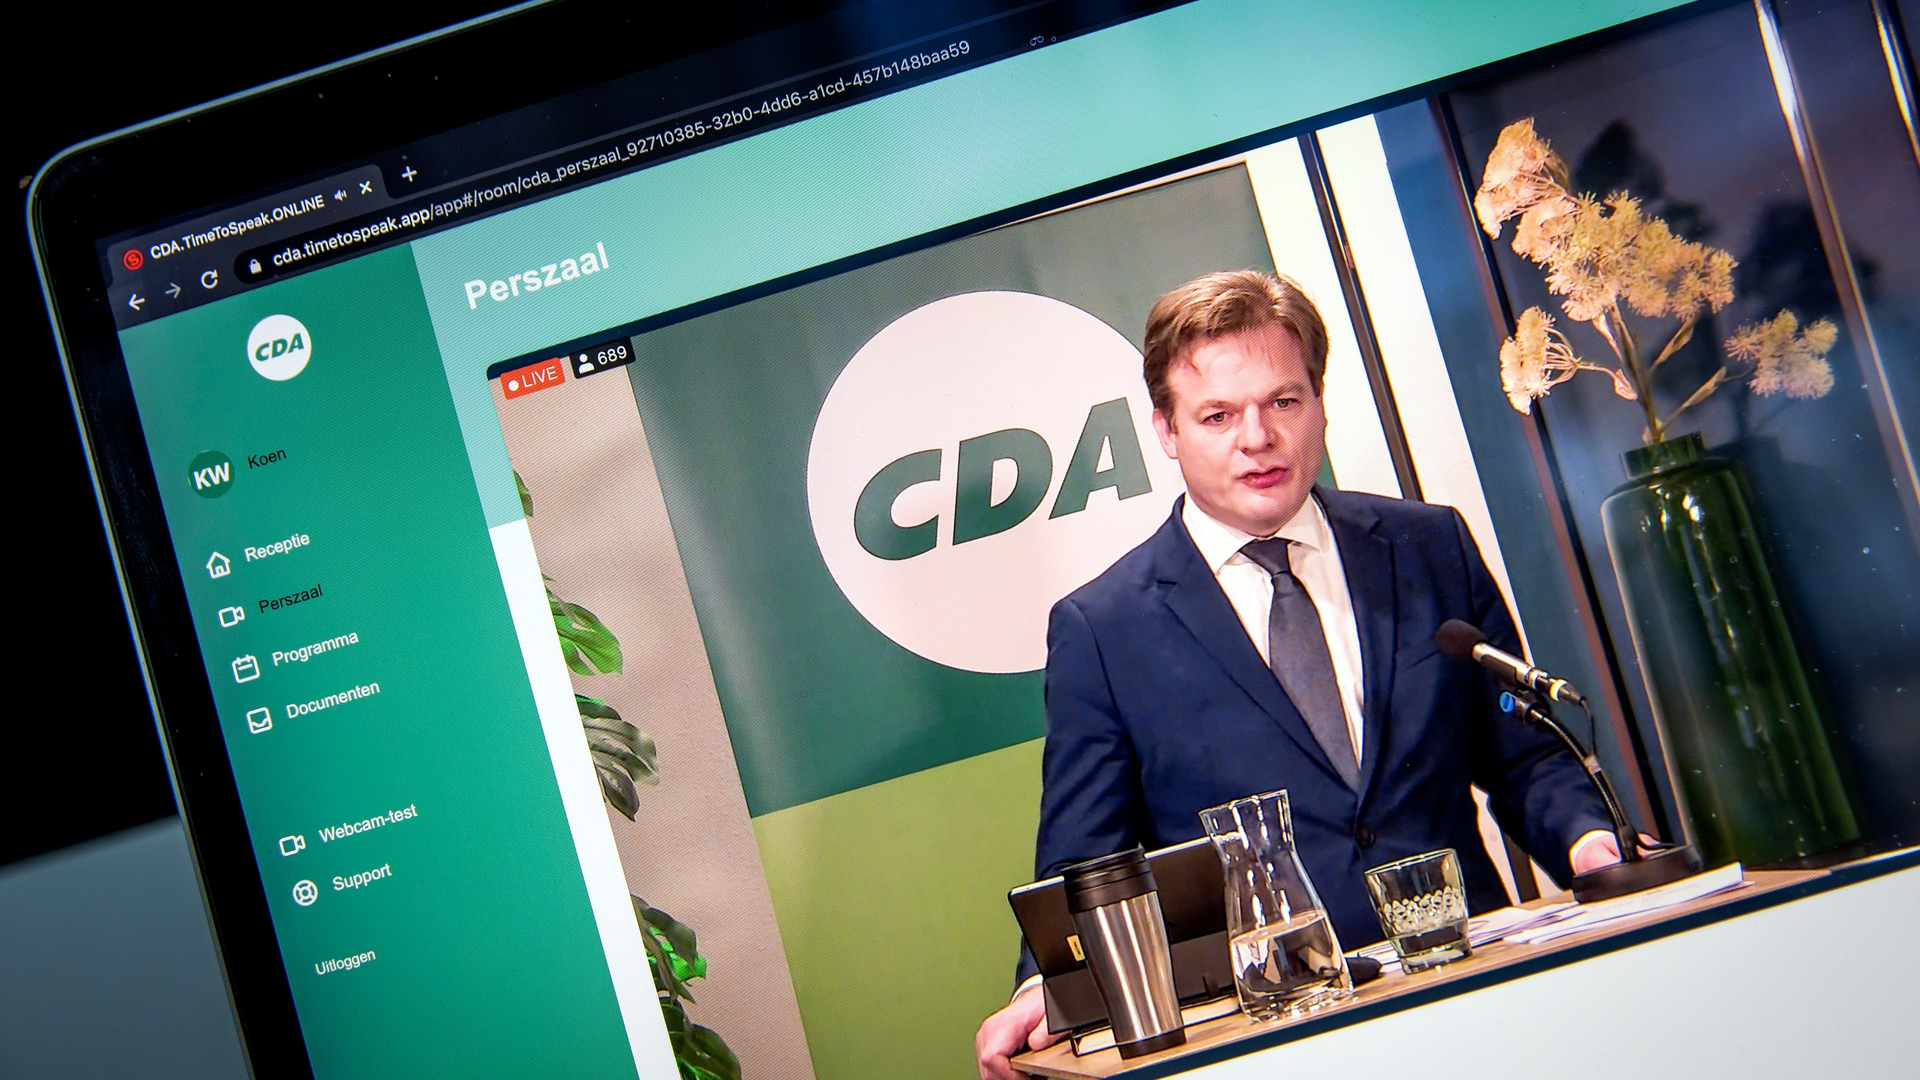 CDA holds an online Election Congress